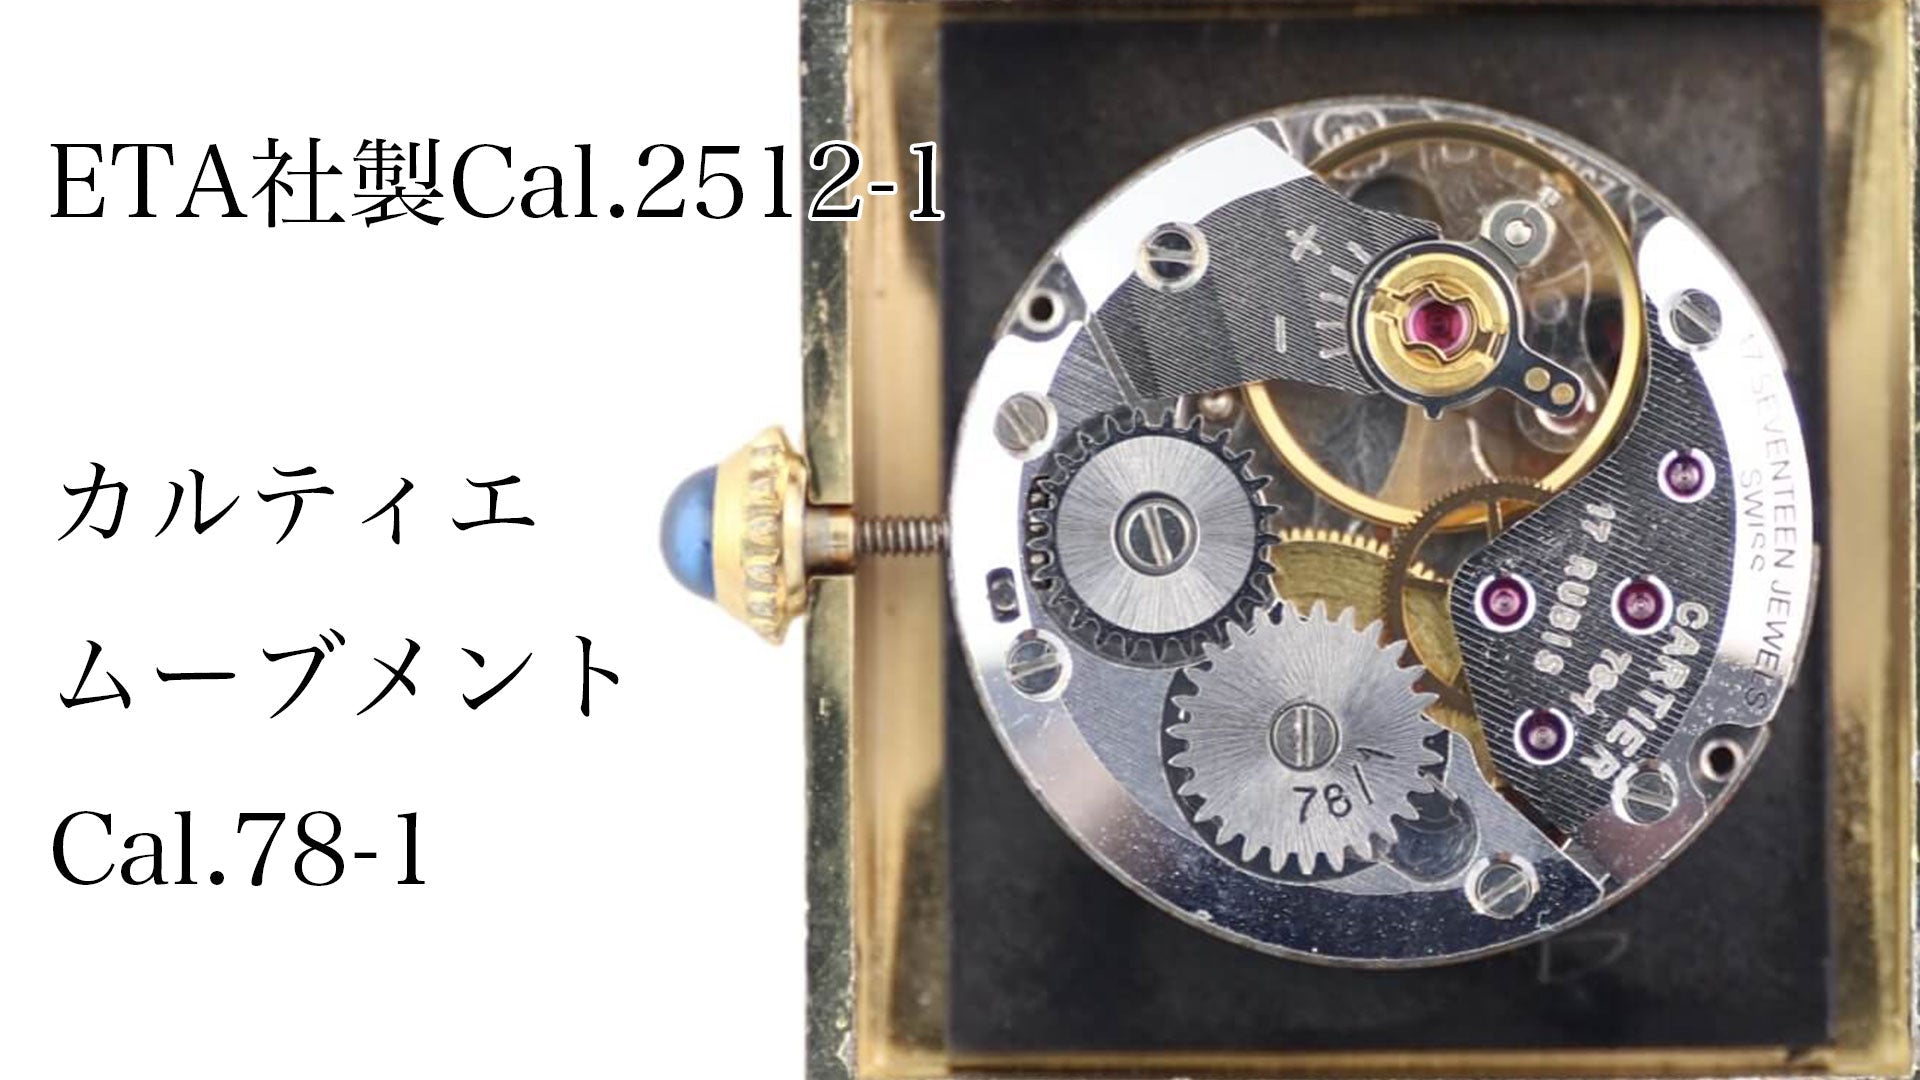 ETA社製Cal.2512-1 カルティエムーブメントCal.78-1